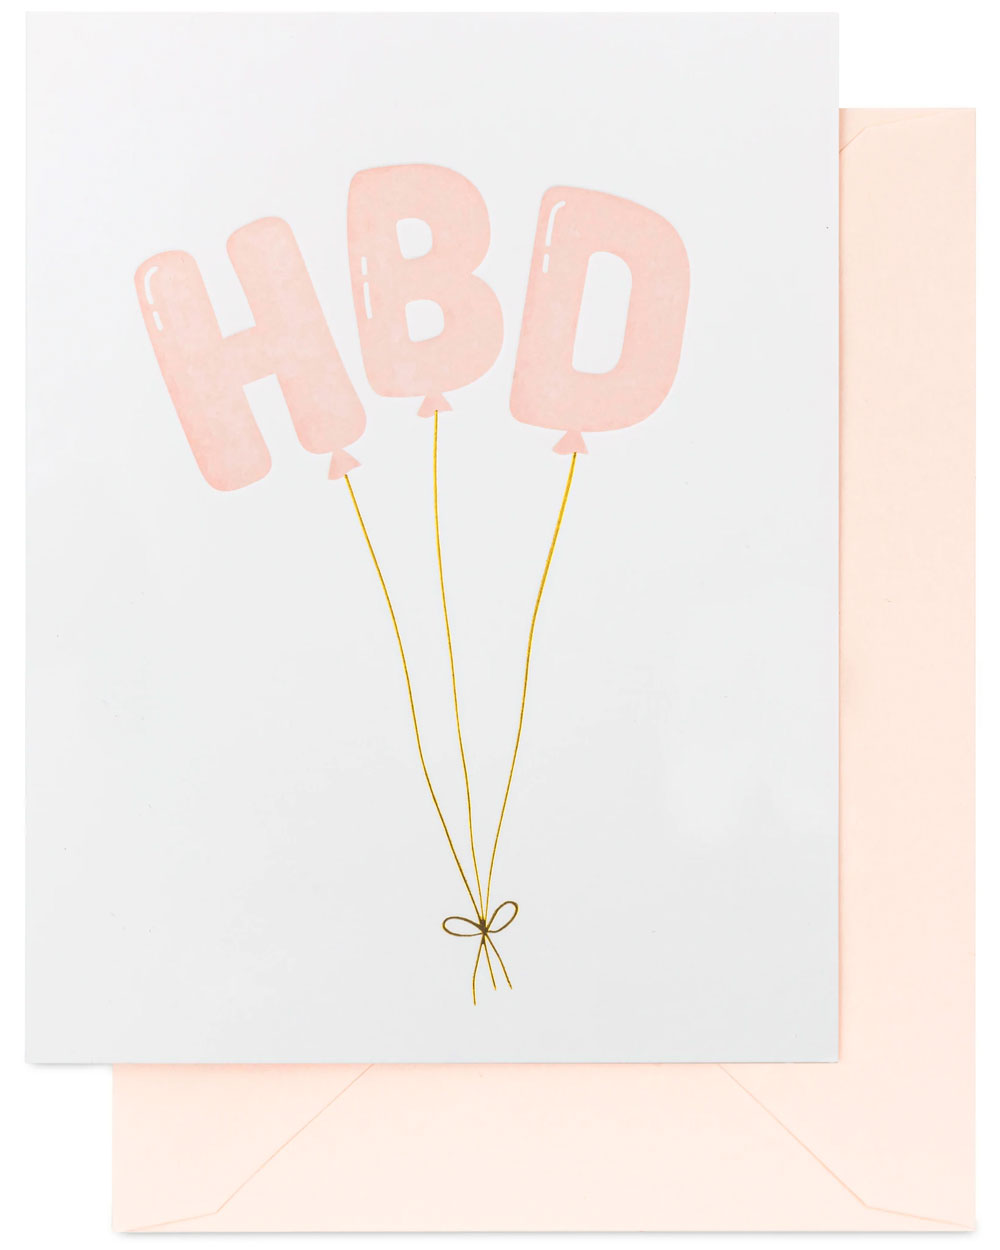 HBD Balloons Holiday Card